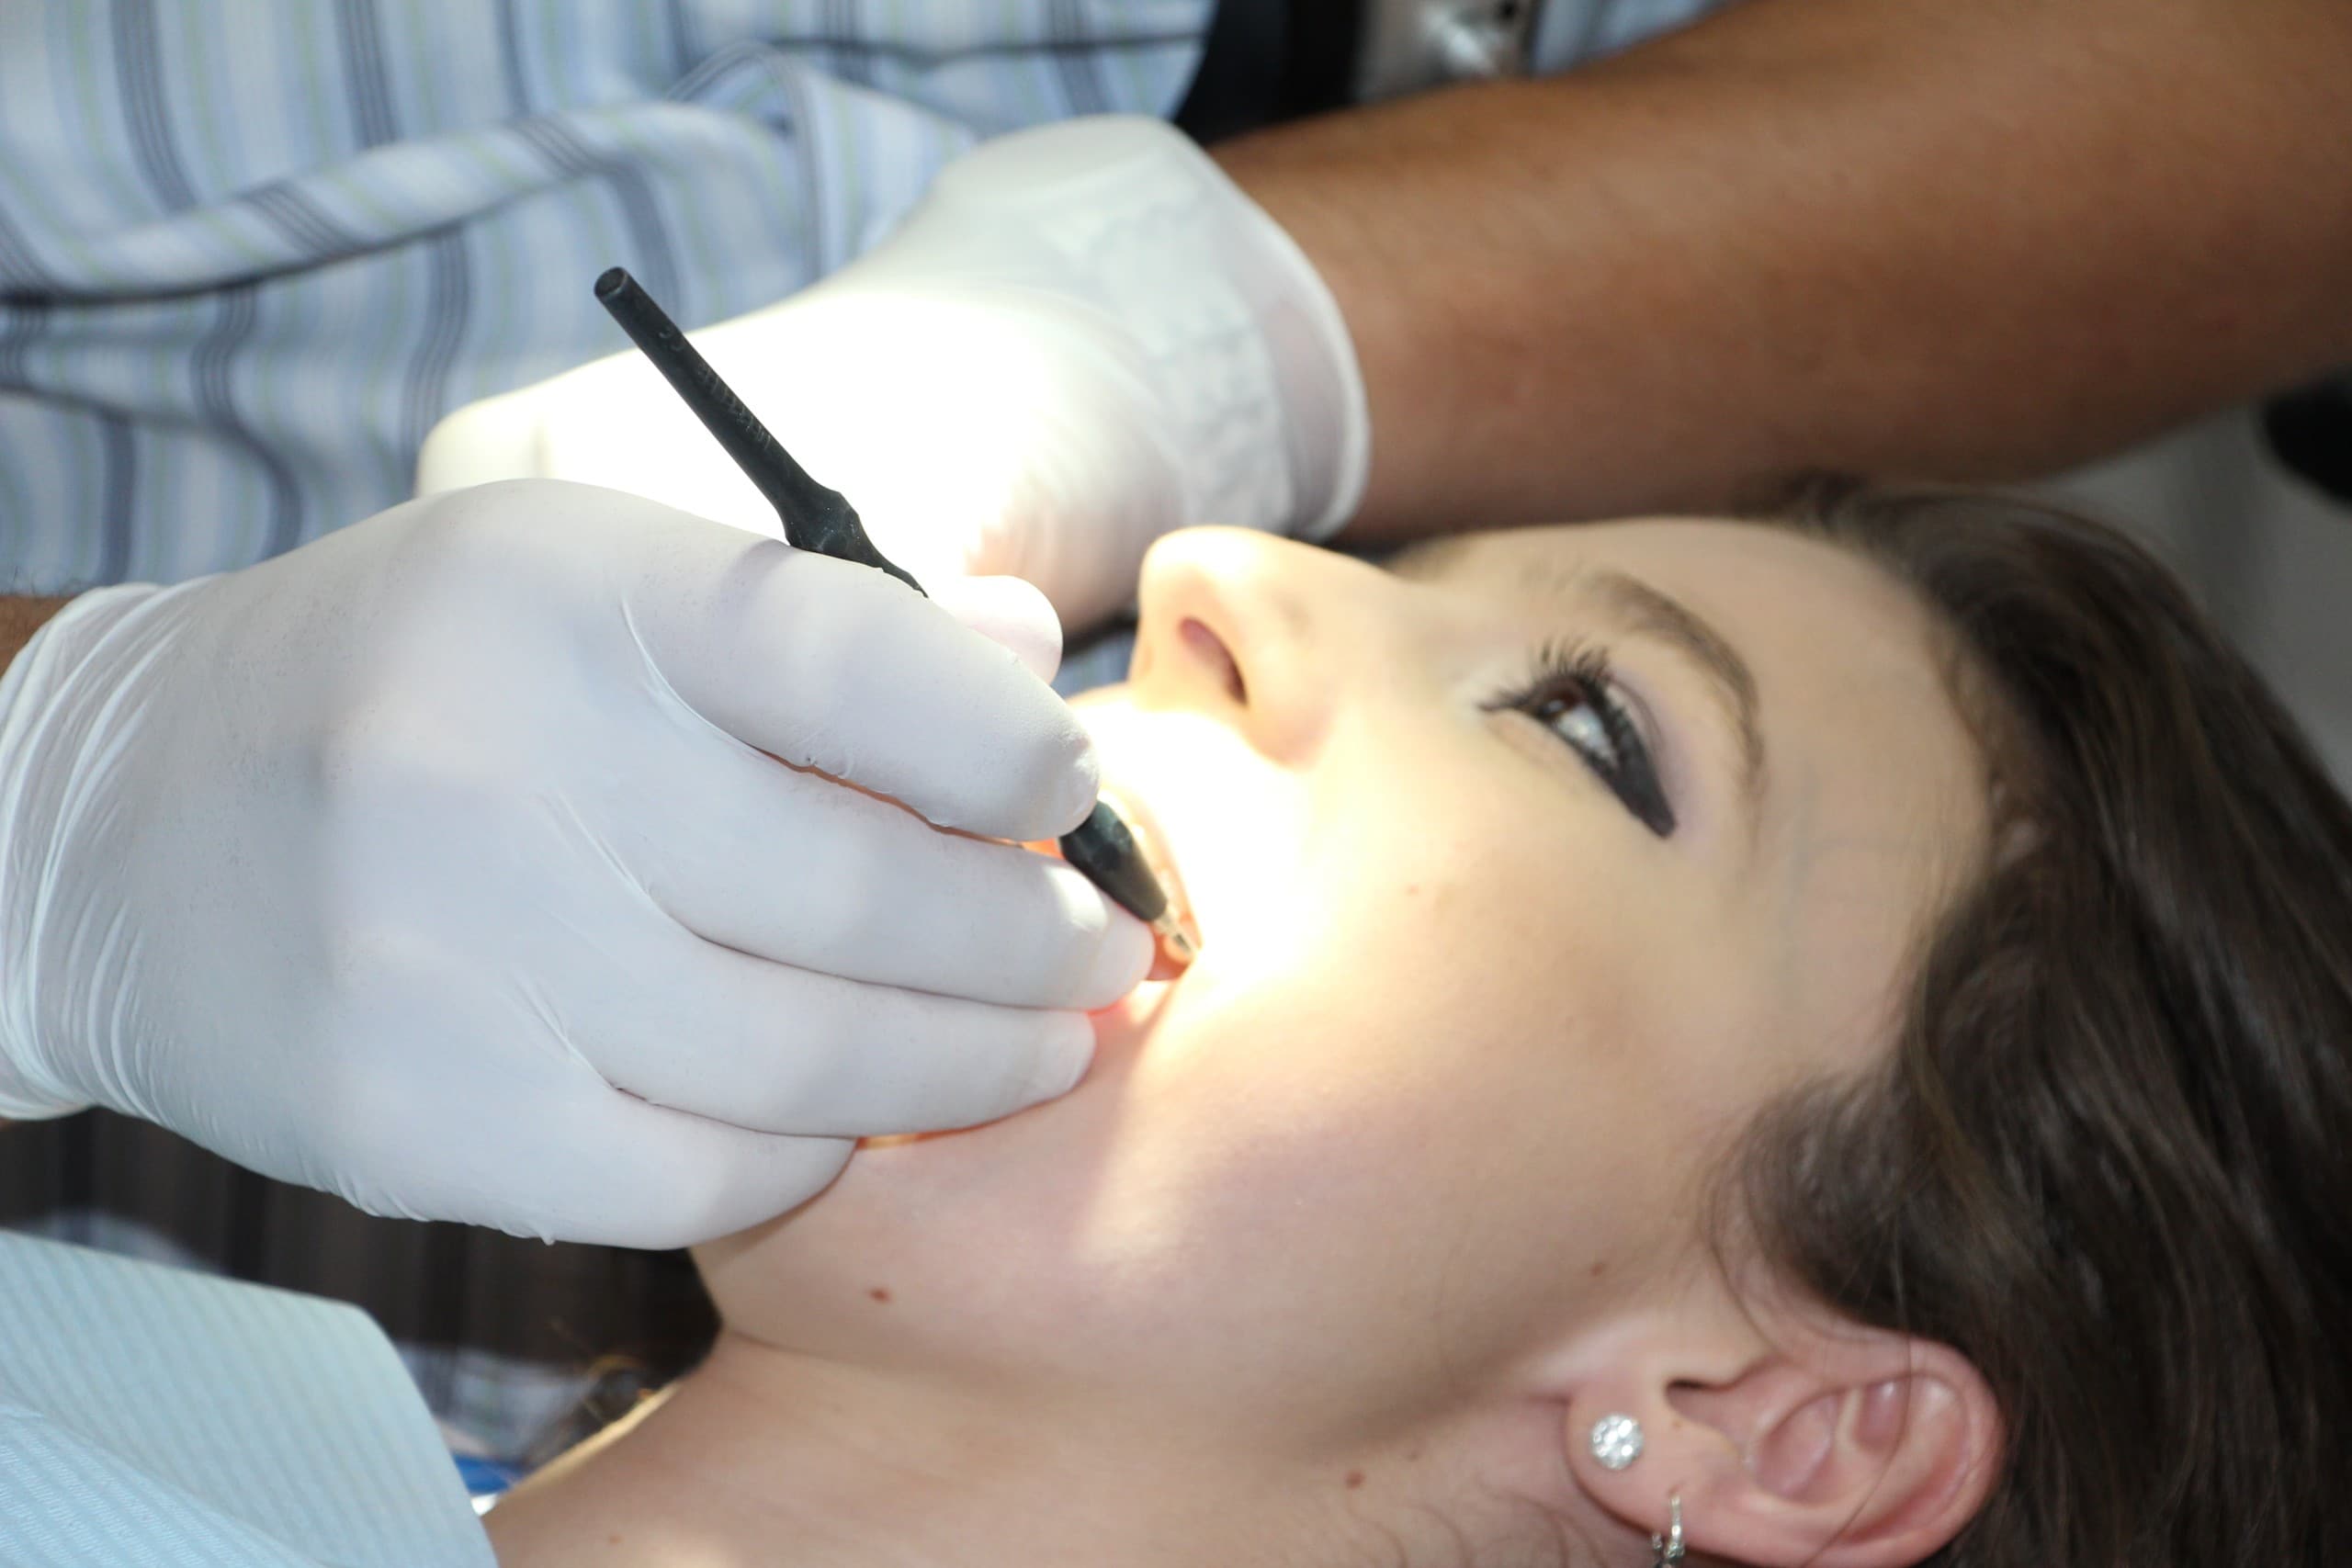 teeth cleaning, tooth repairs, treat teeth